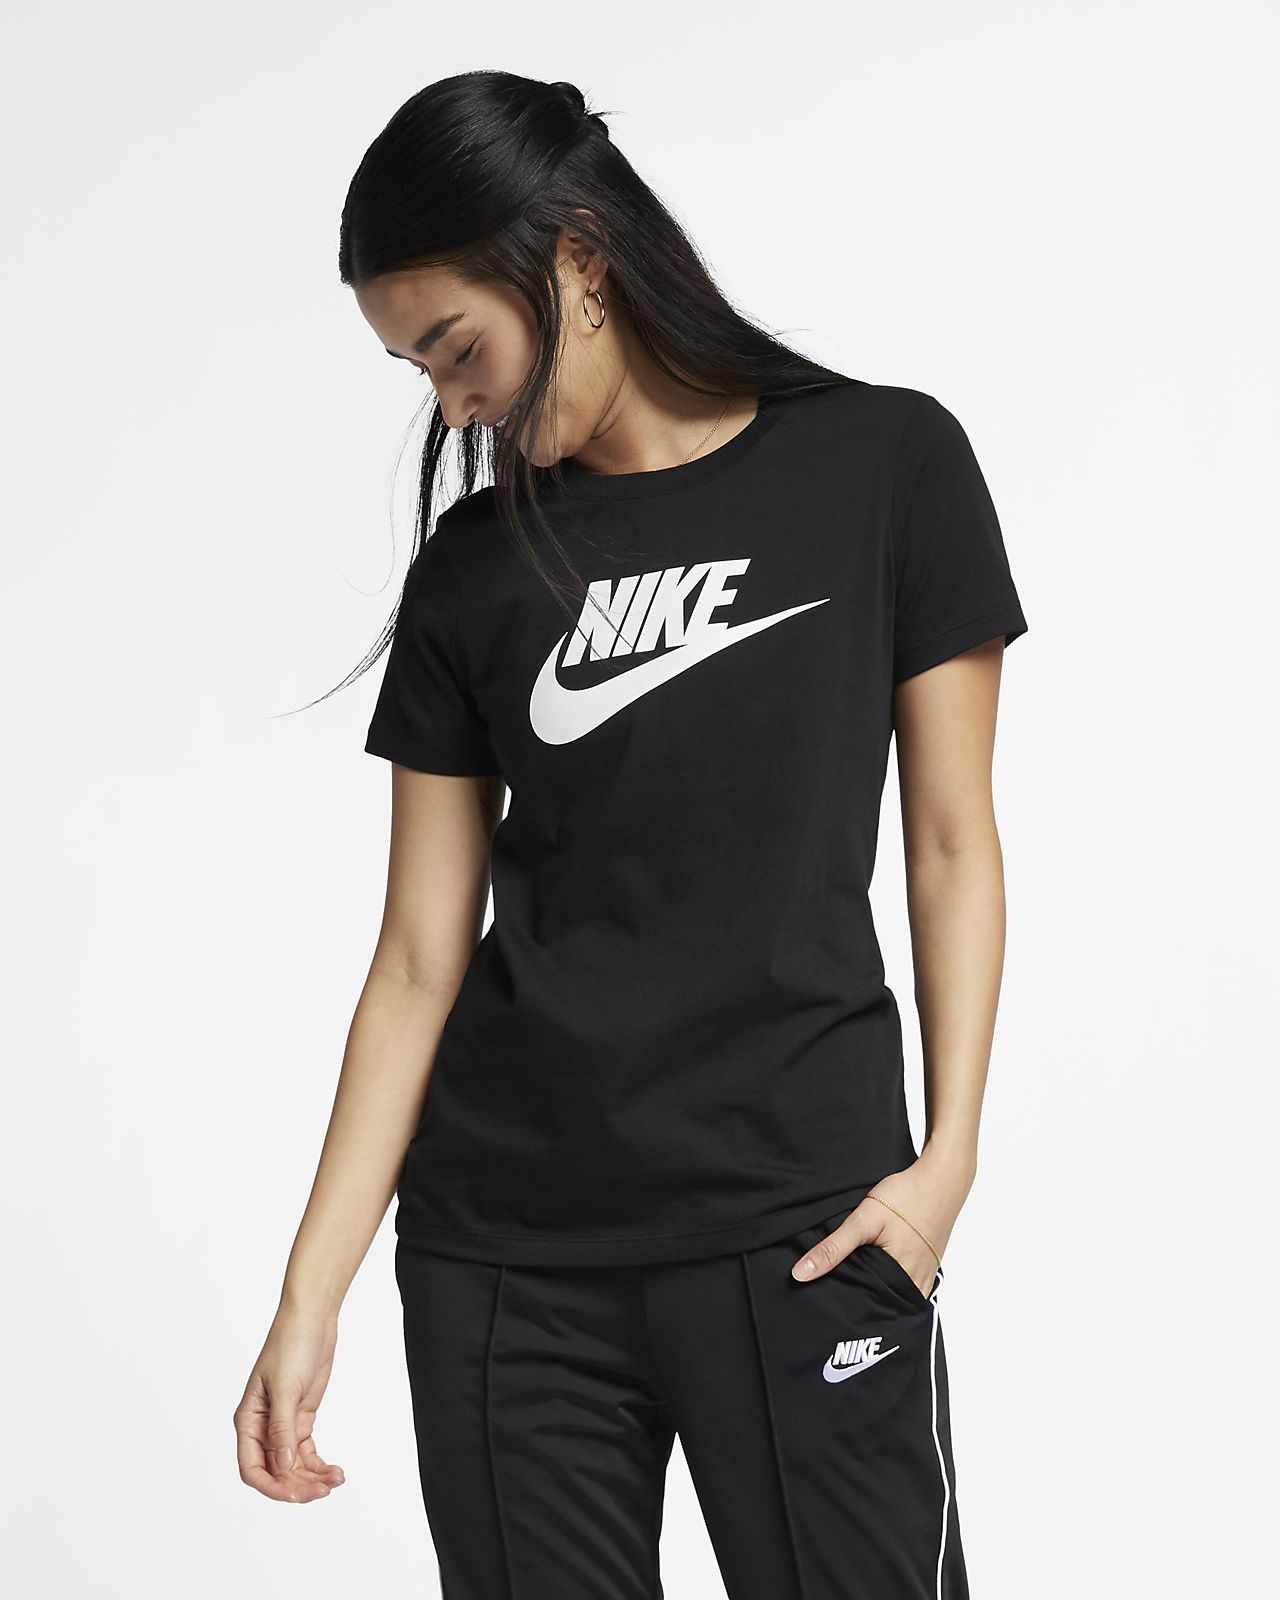 Nike Official Nike Sportswear Essential Women S T Shirt Online